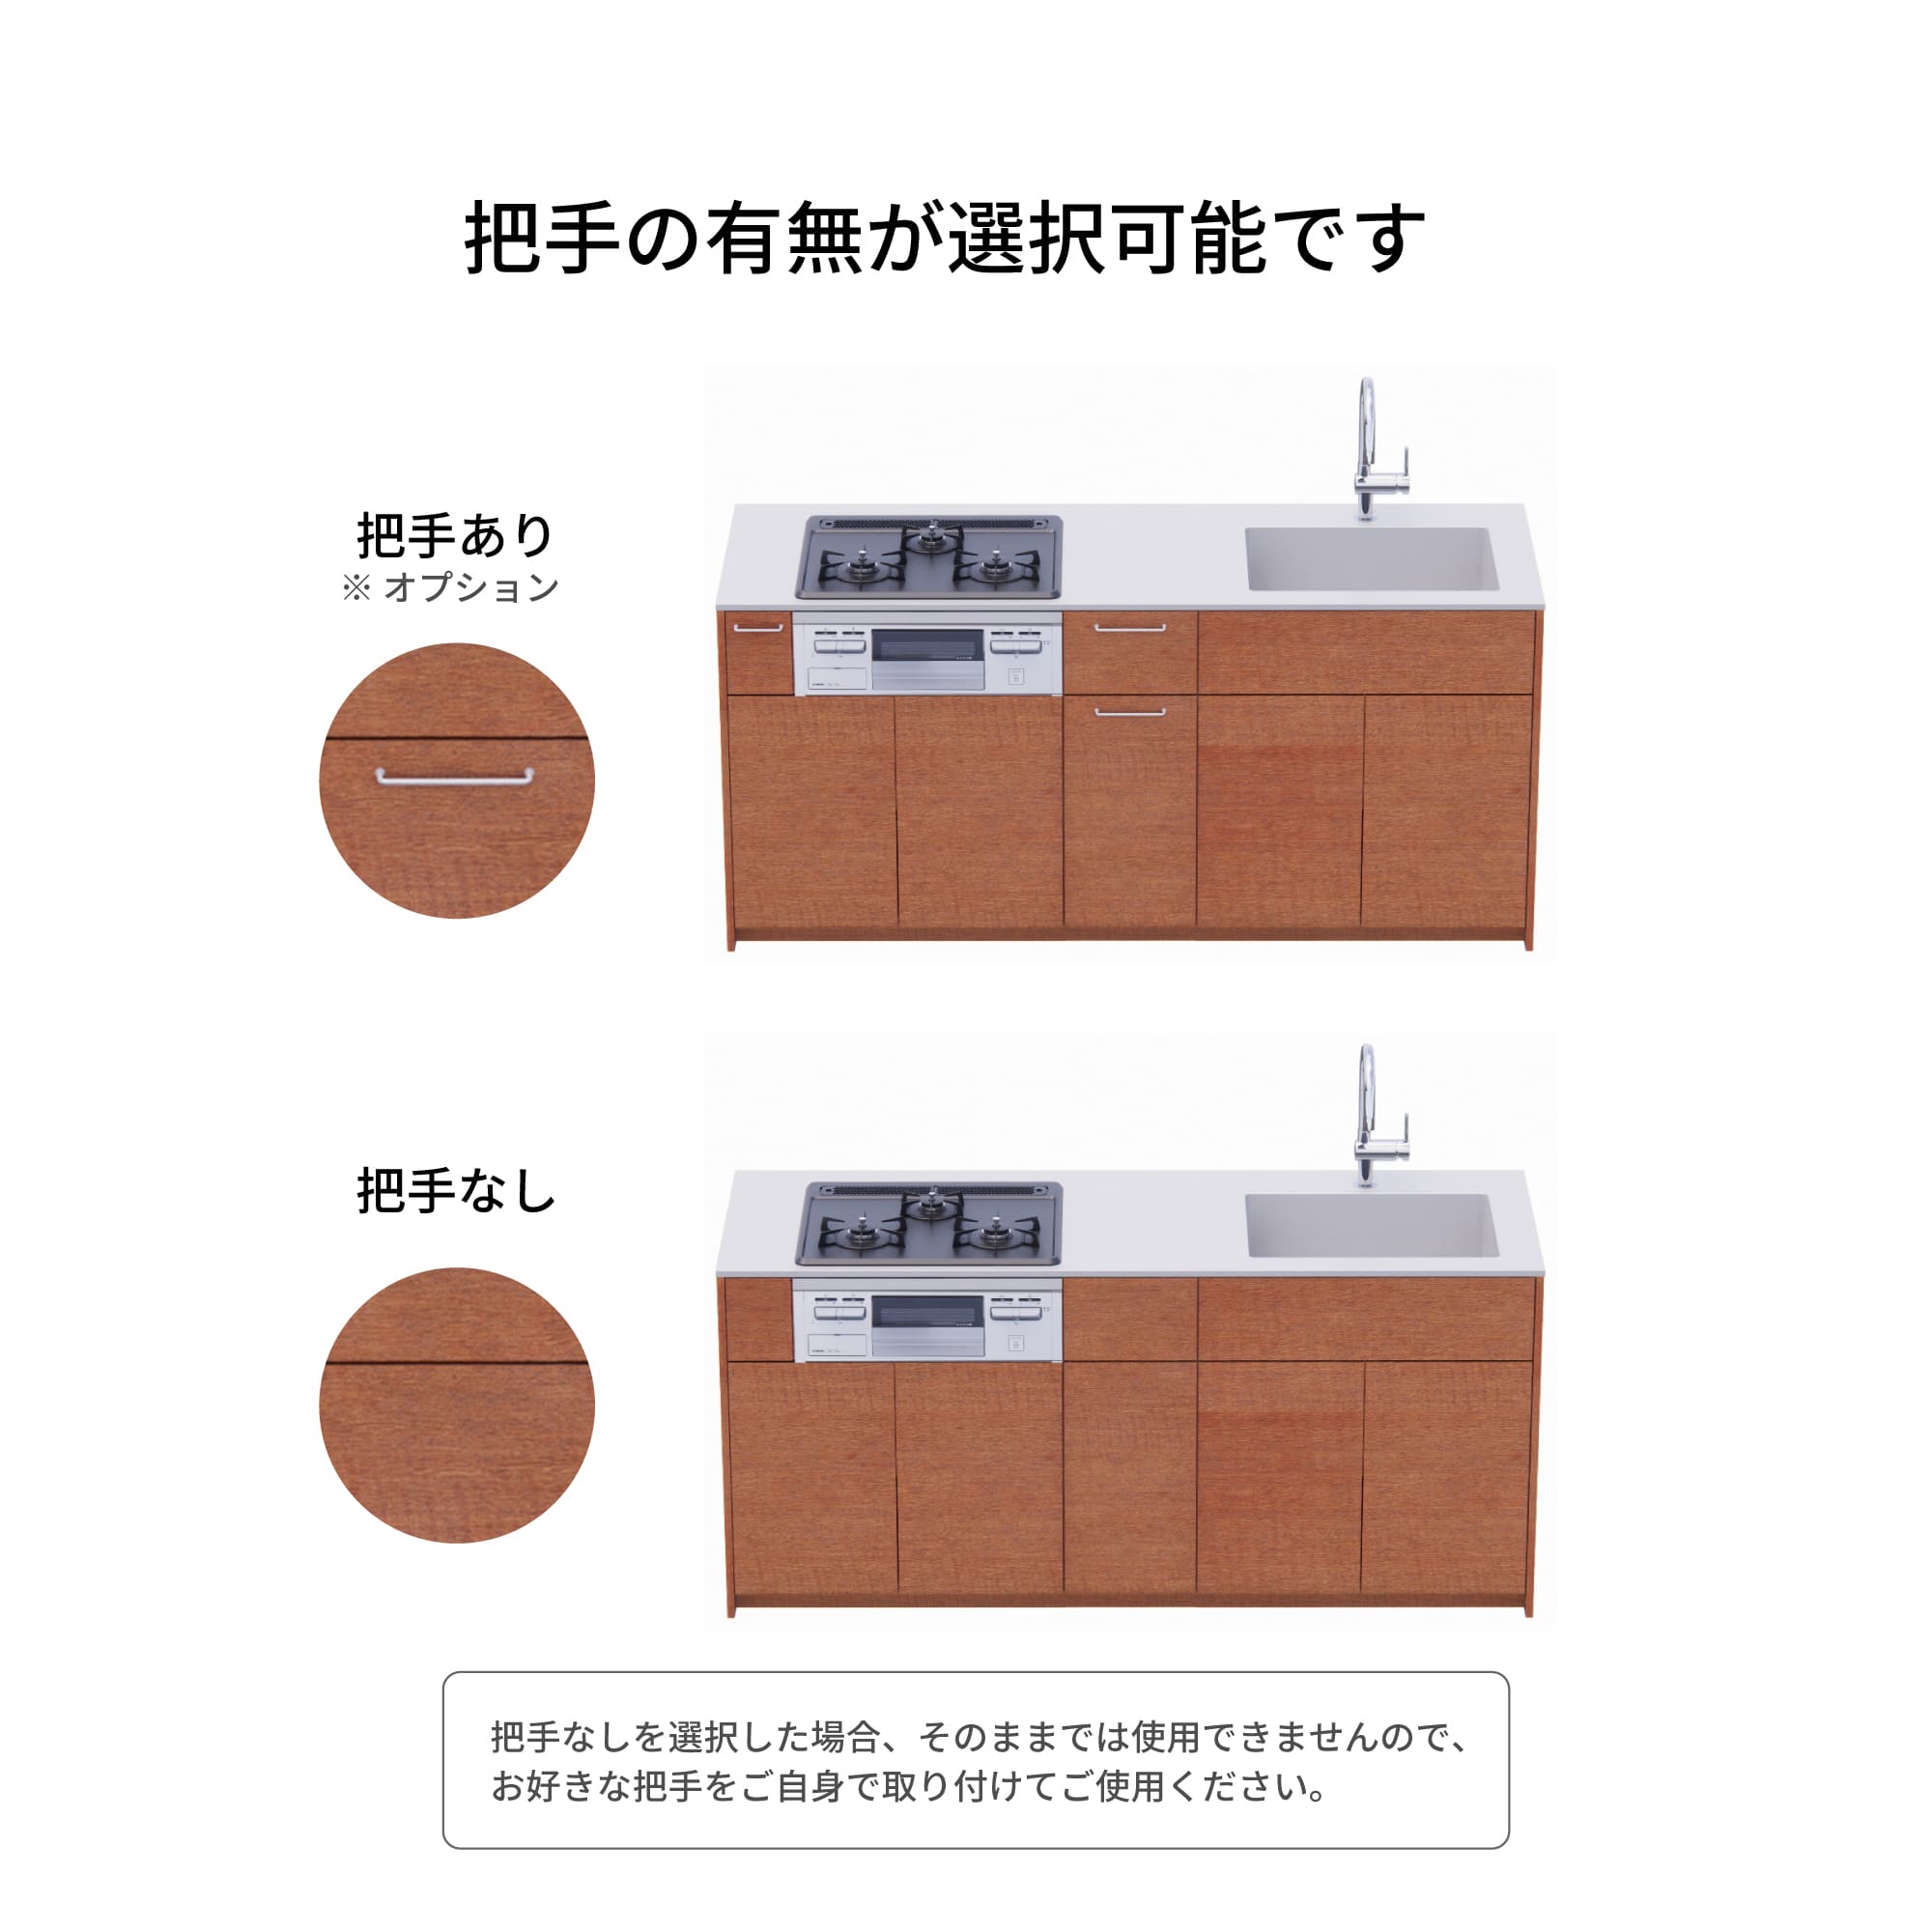 木製システムキッチン 壁付け型 W1840・コンロなし / オーブンなし / 食洗機なし KB-KC022-12-G183 把手の有無が選択可能です